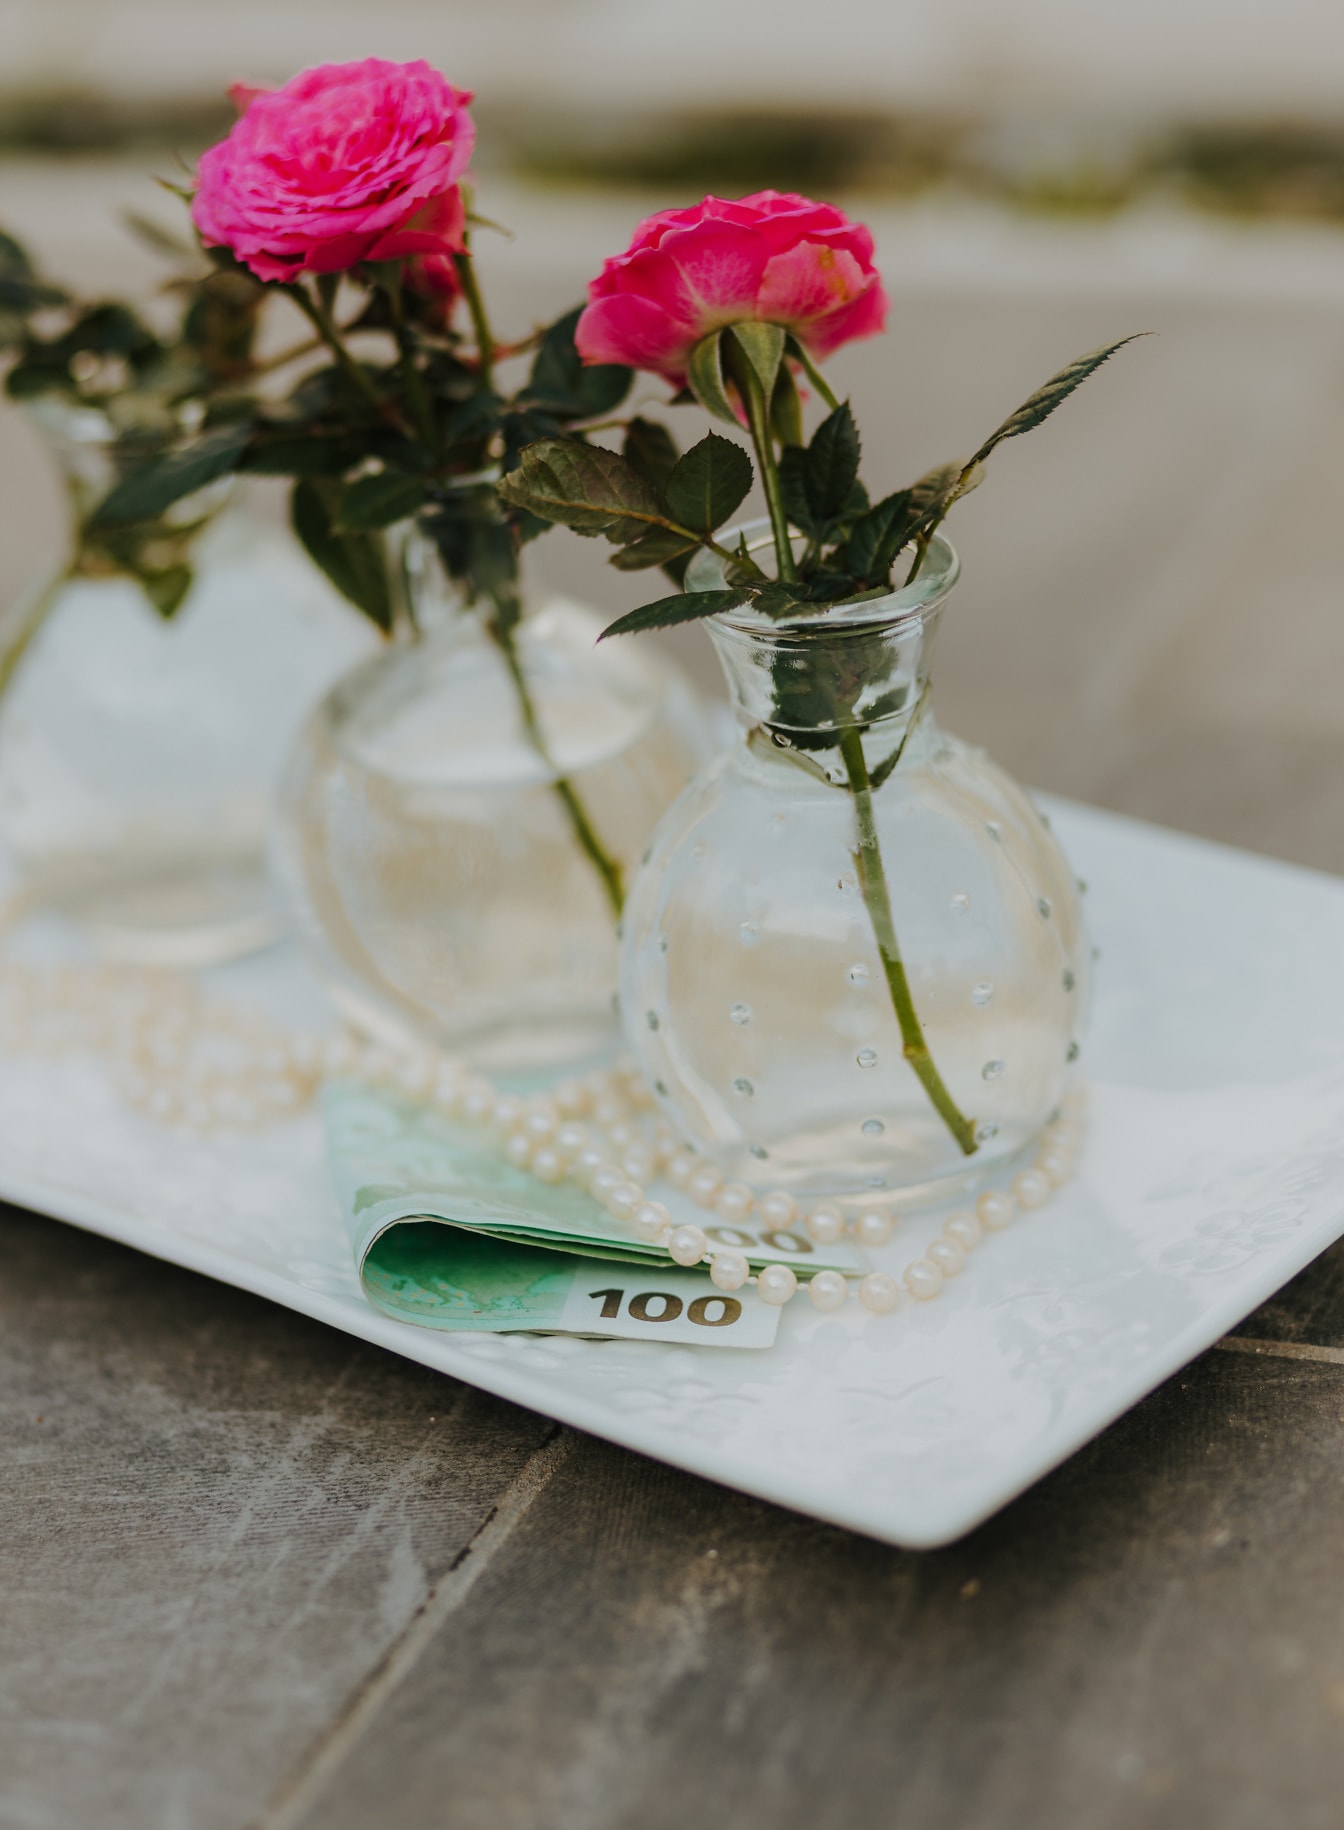 Pieniądze 100 euro z przezroczystym wazonem z różowawymi różami